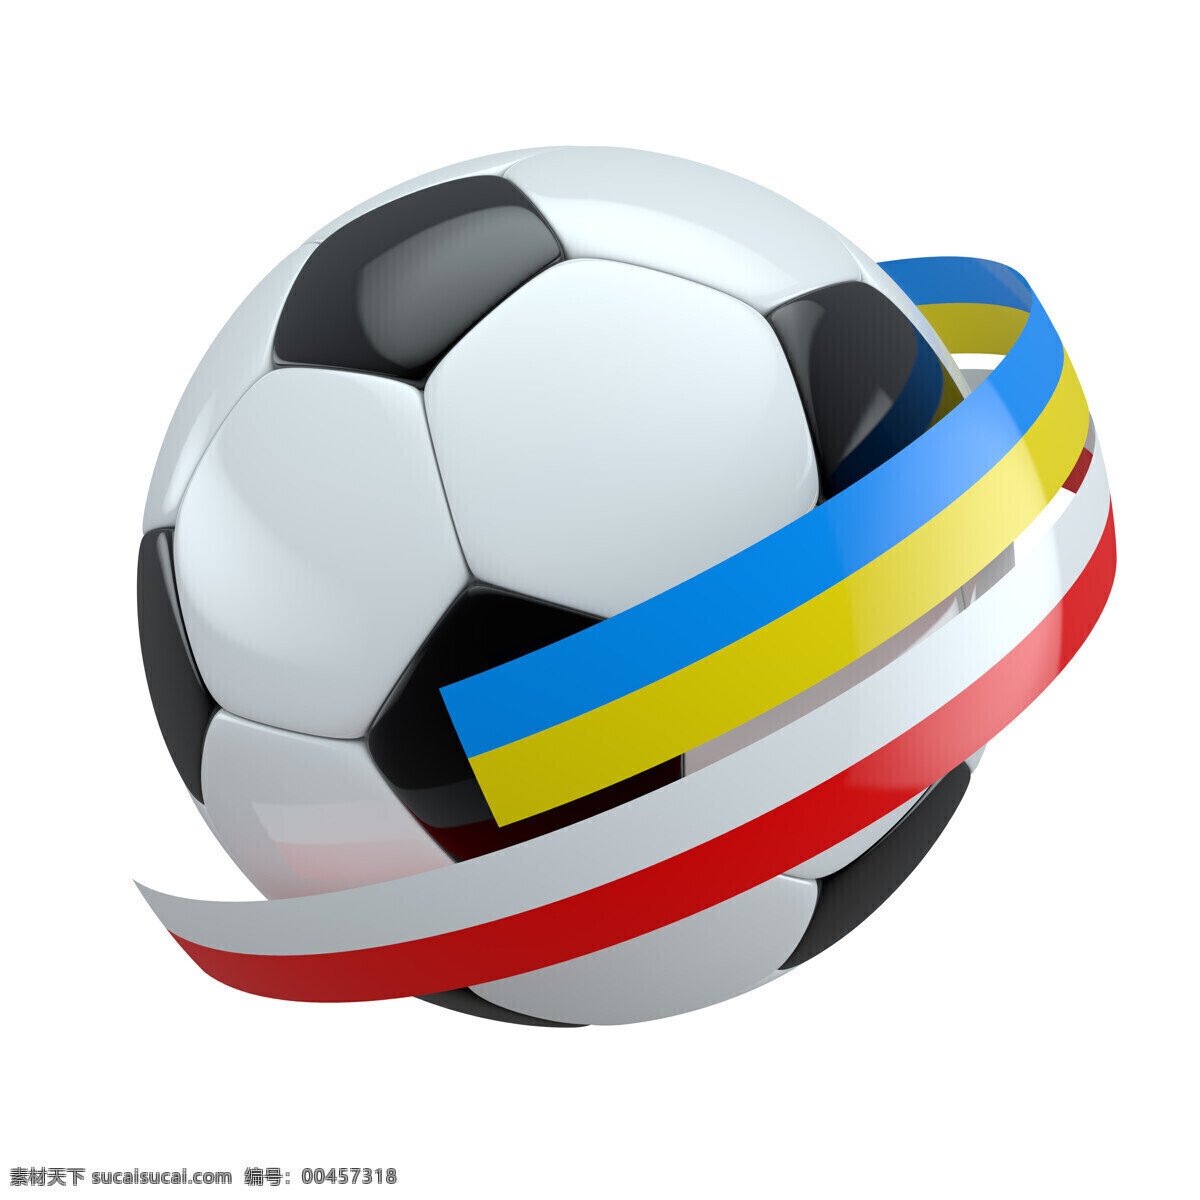 足球 彩带 黄色 红色 蓝色 白色 其他模板 体育运动 生活百科